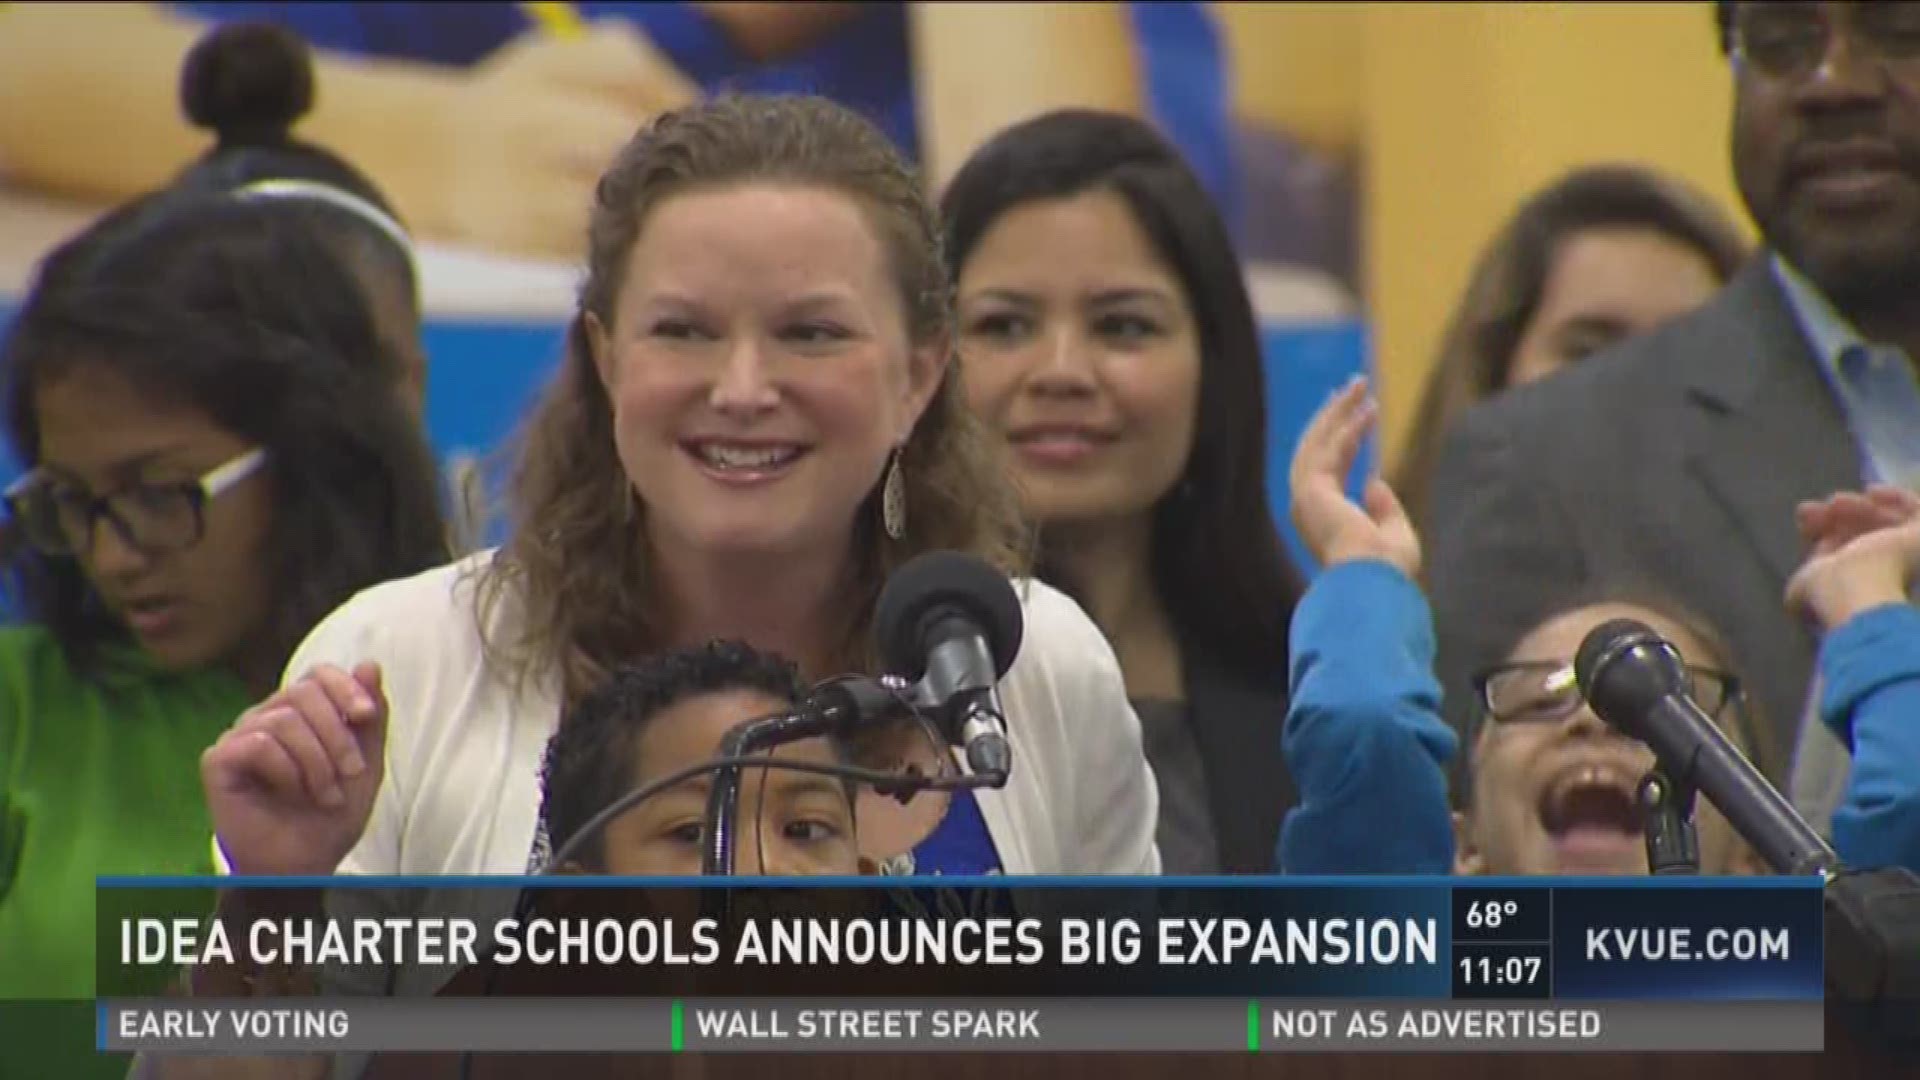 IDEA Public Schools announces big expansion